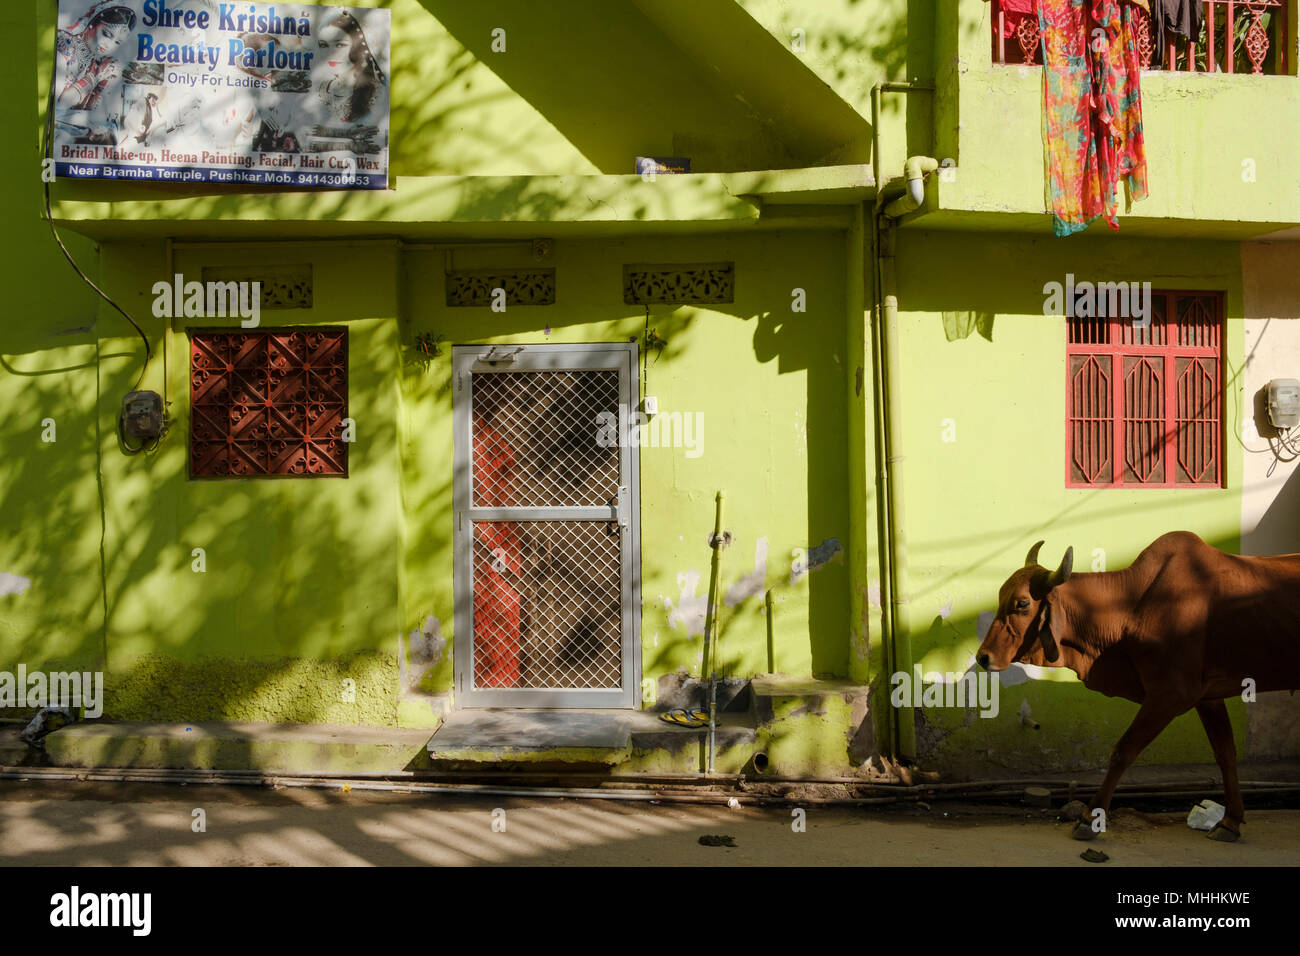 Paseando vaca edificio pintado de verde. Pushkar, Rajastán. La India Foto de stock